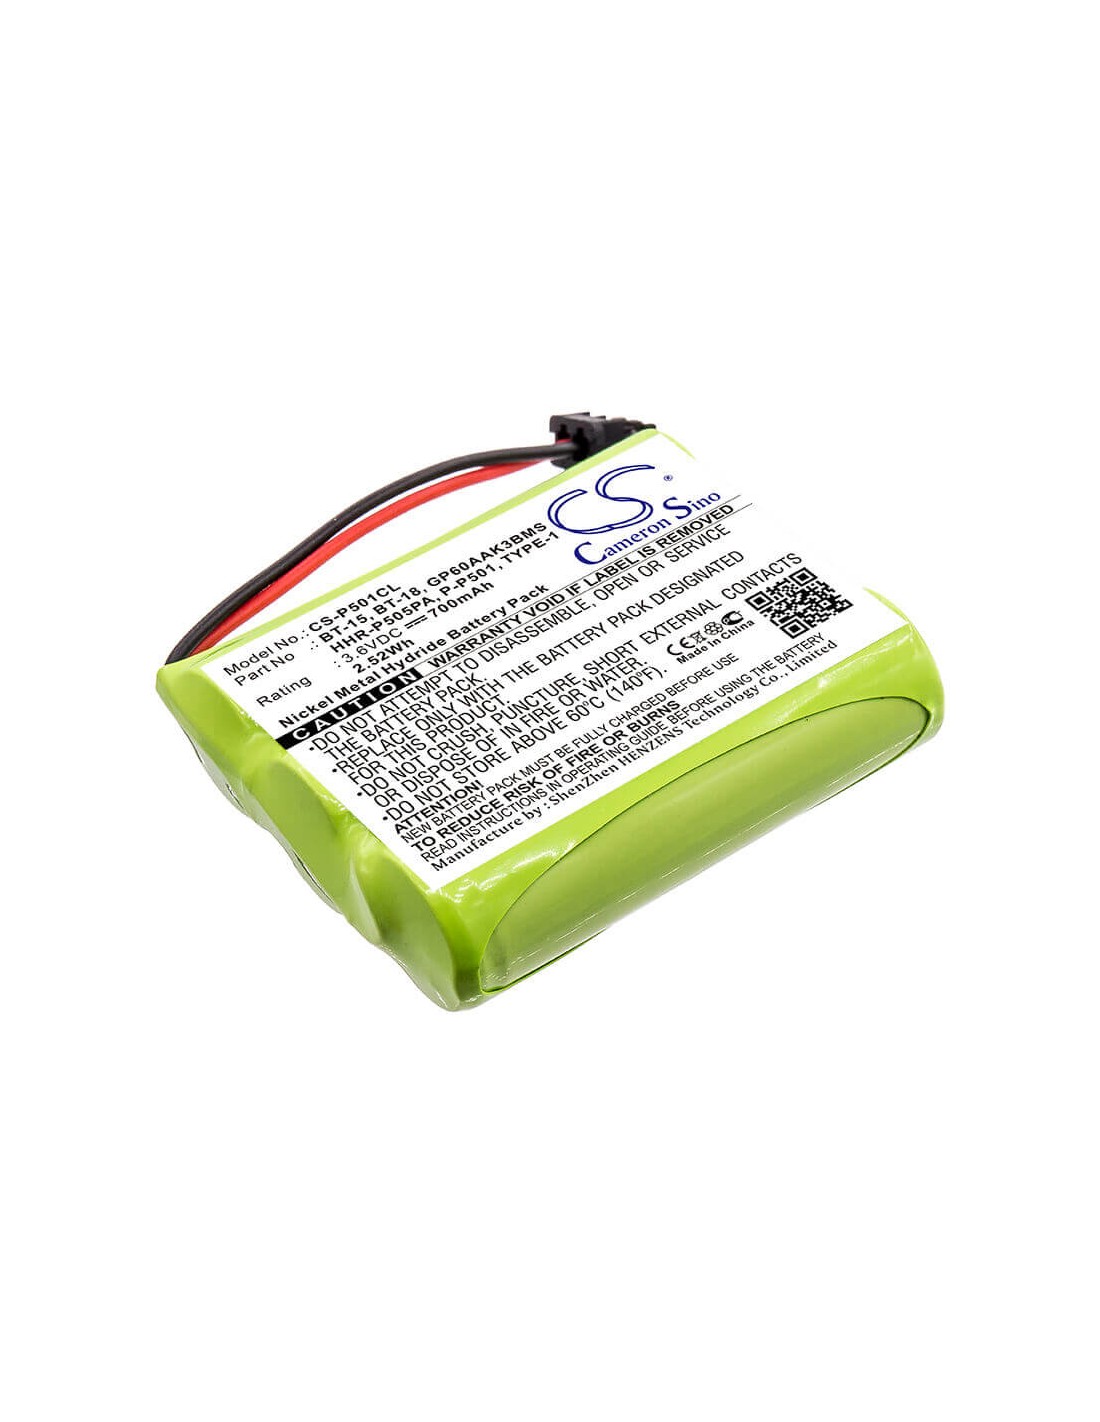 Battery for Memorex, Ybt3n800mah 3.6V, 700mAh - 2.52Wh